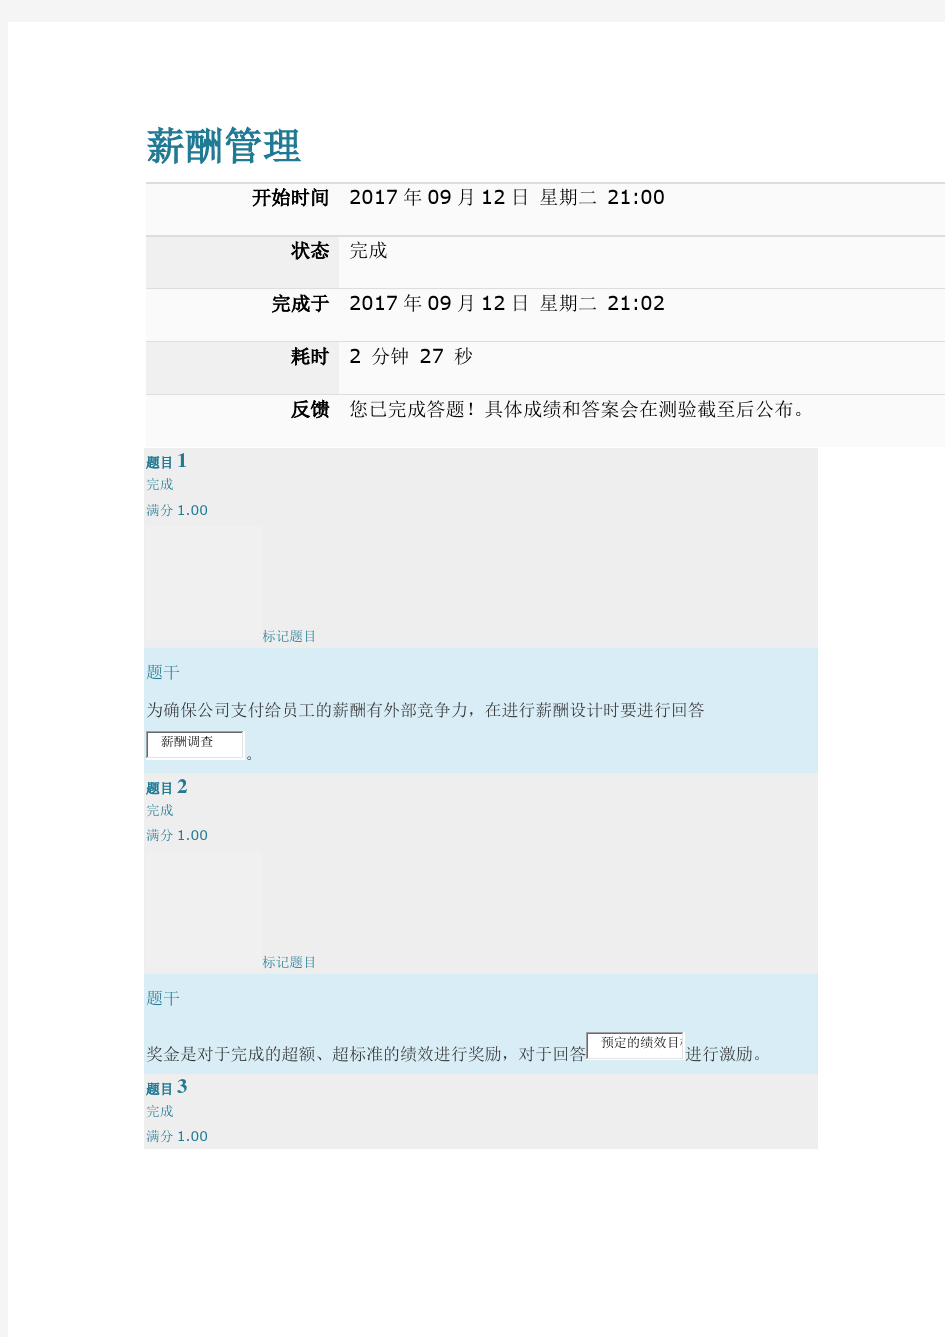 上海交通大学网络教育 薪酬管理第二次作业